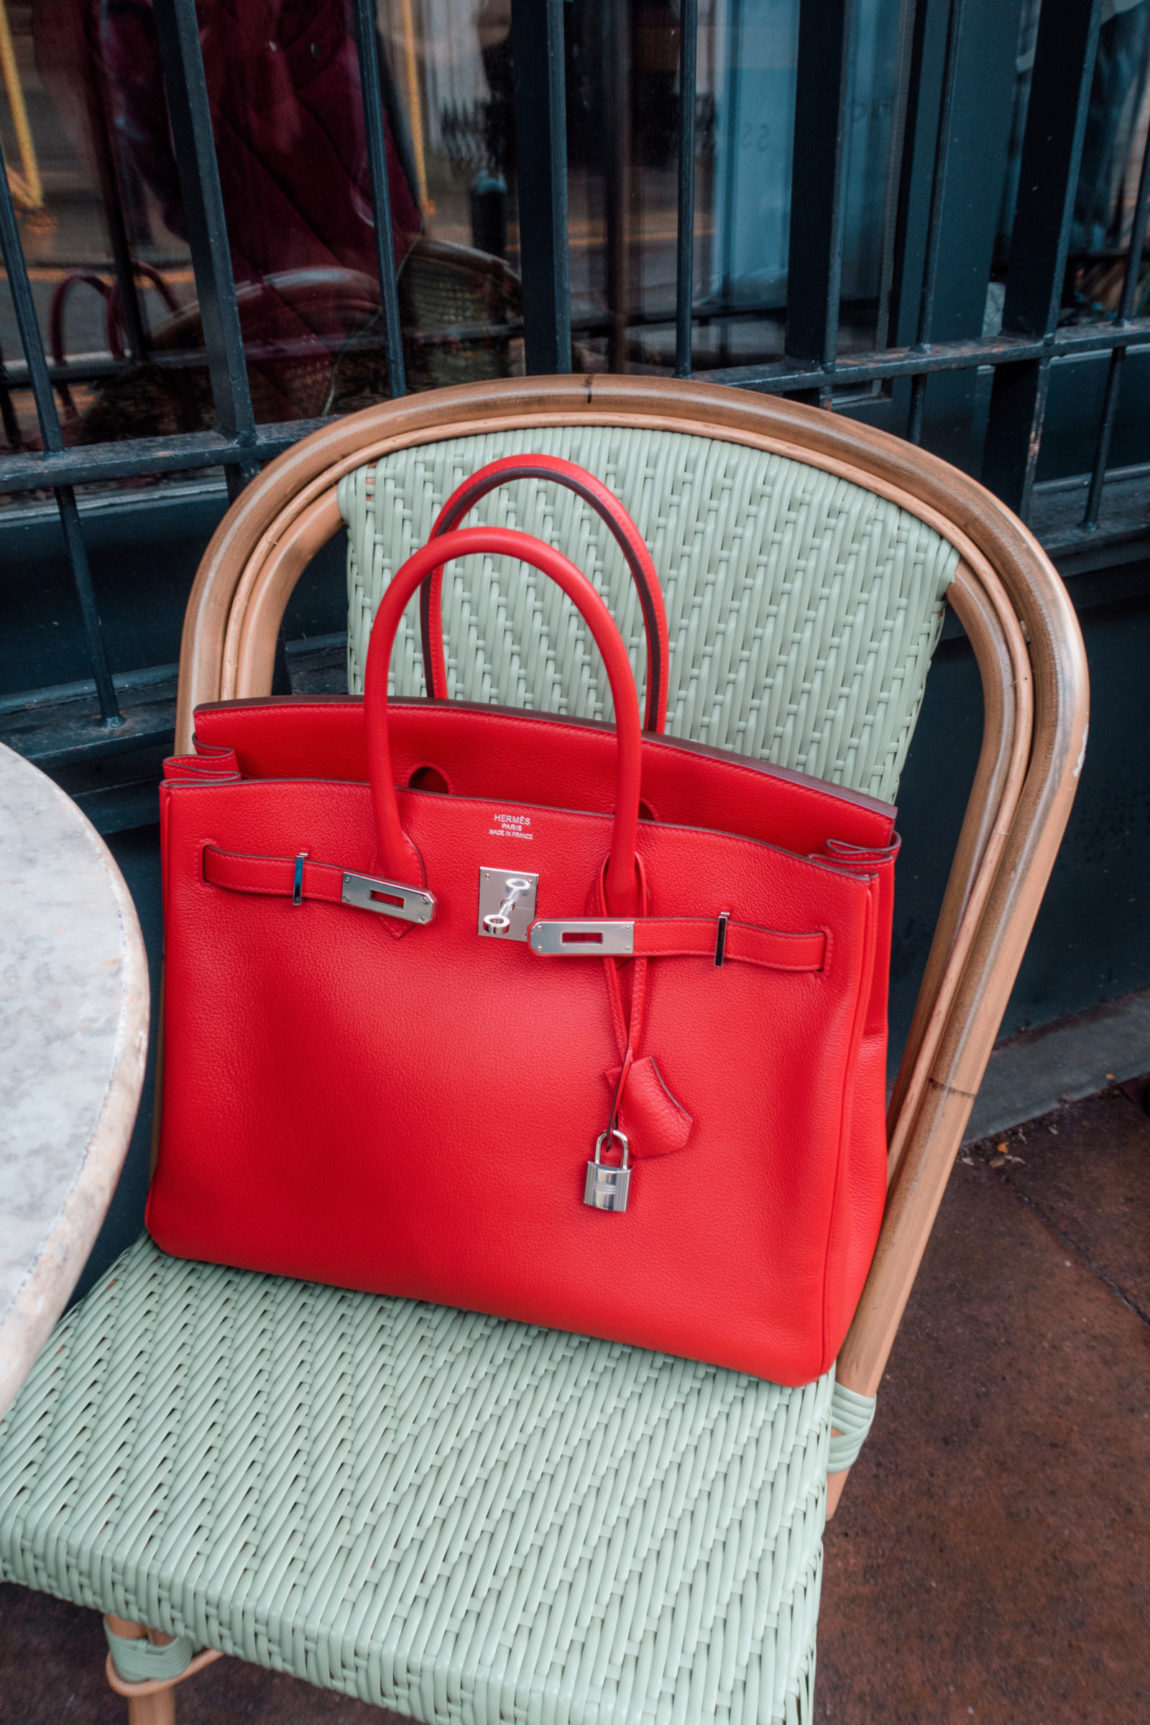 Getting a Birkin Bag in Hermès London Store | Glam & Glitter